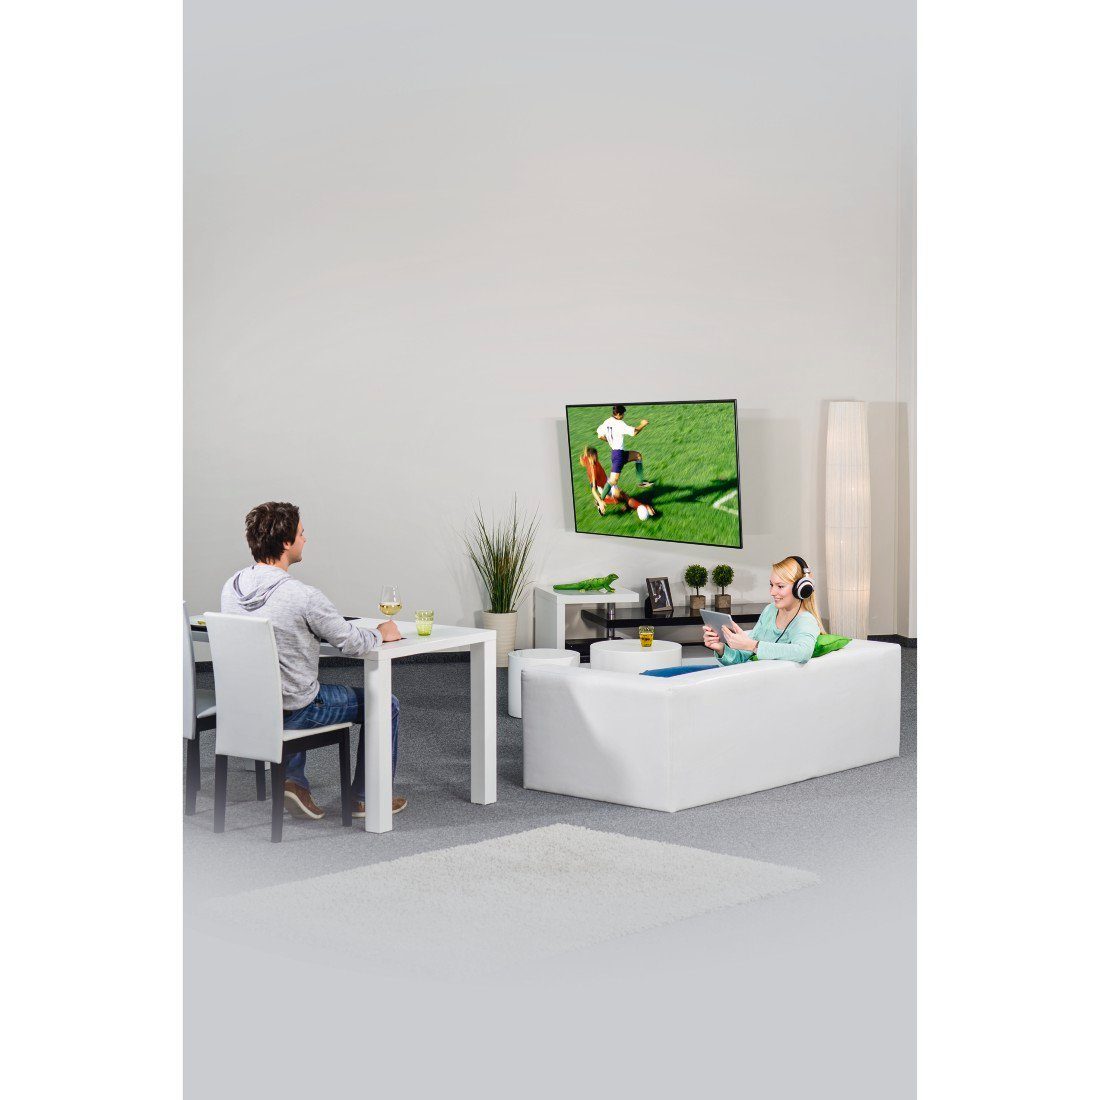 Hama TV Wandhalterung FULLMOTION, 200x200, (48), 2 122 cm (bis Zoll) 48 TV-Wandhalterung, weiß Arme